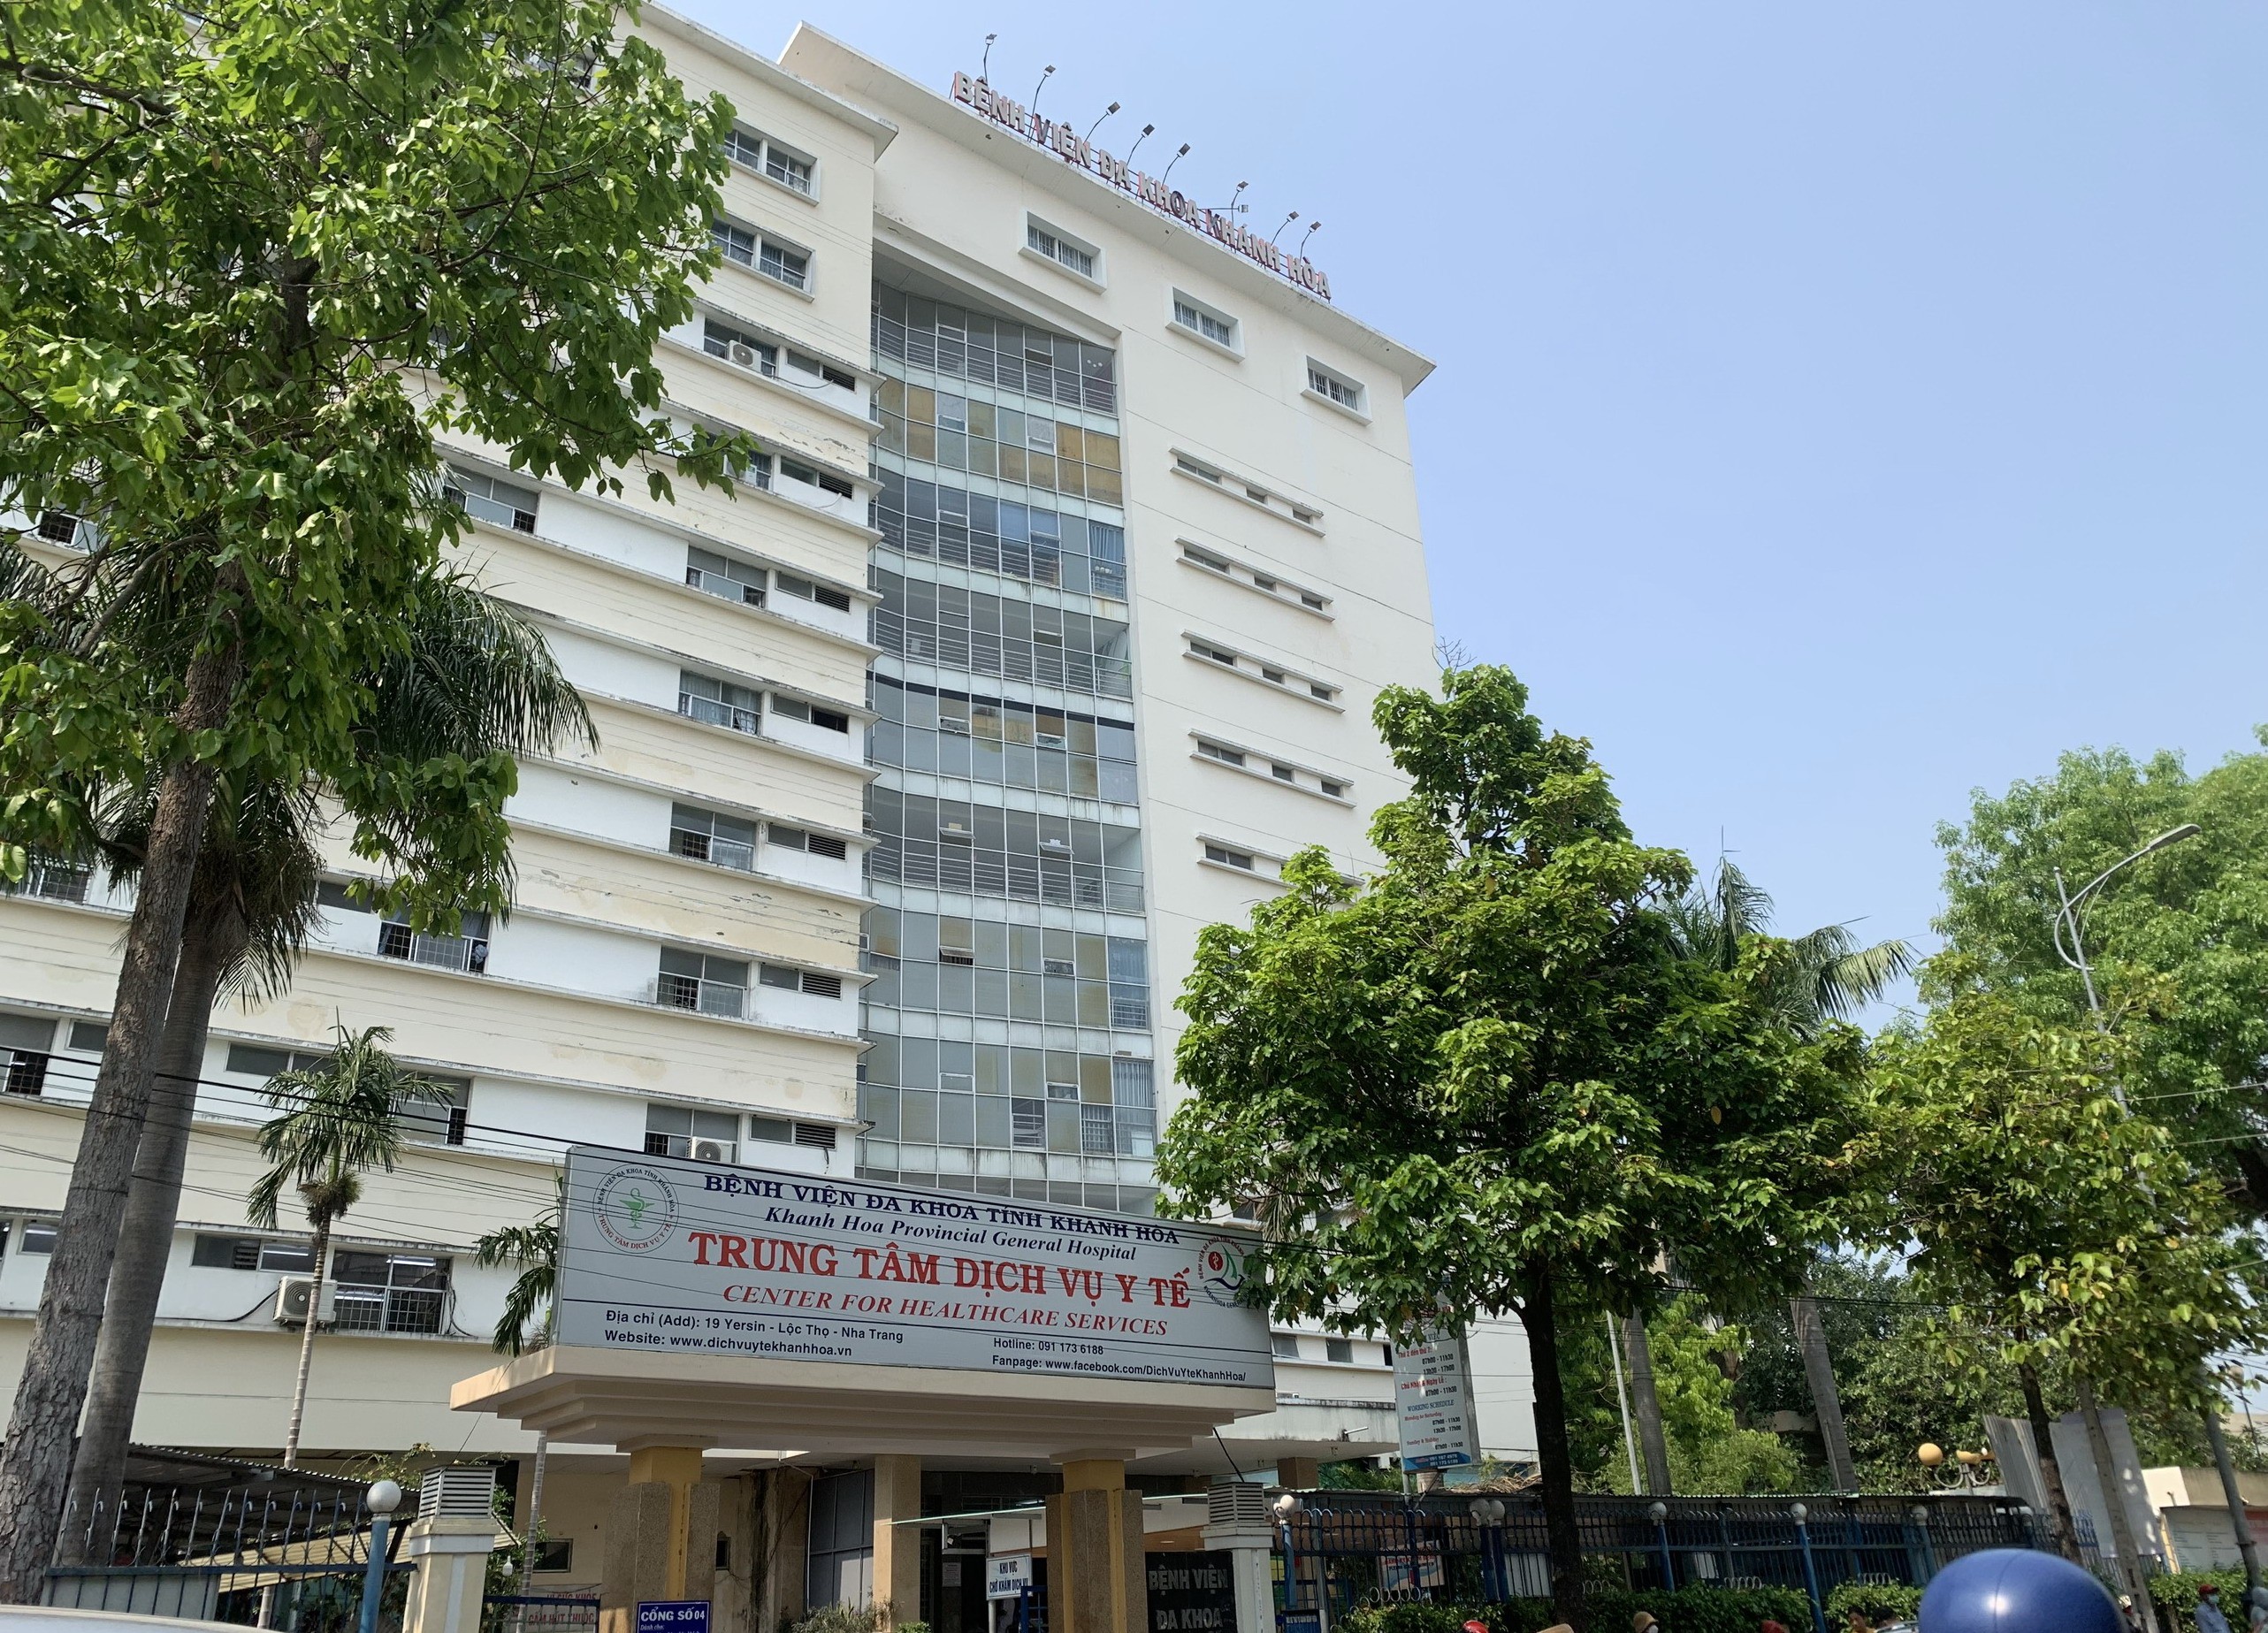 Dân sinh - Xây dựng Bệnh viện Đa khoa tỉnh Khánh Hòa thành bệnh viện tuyến cuối  (Hình 2).